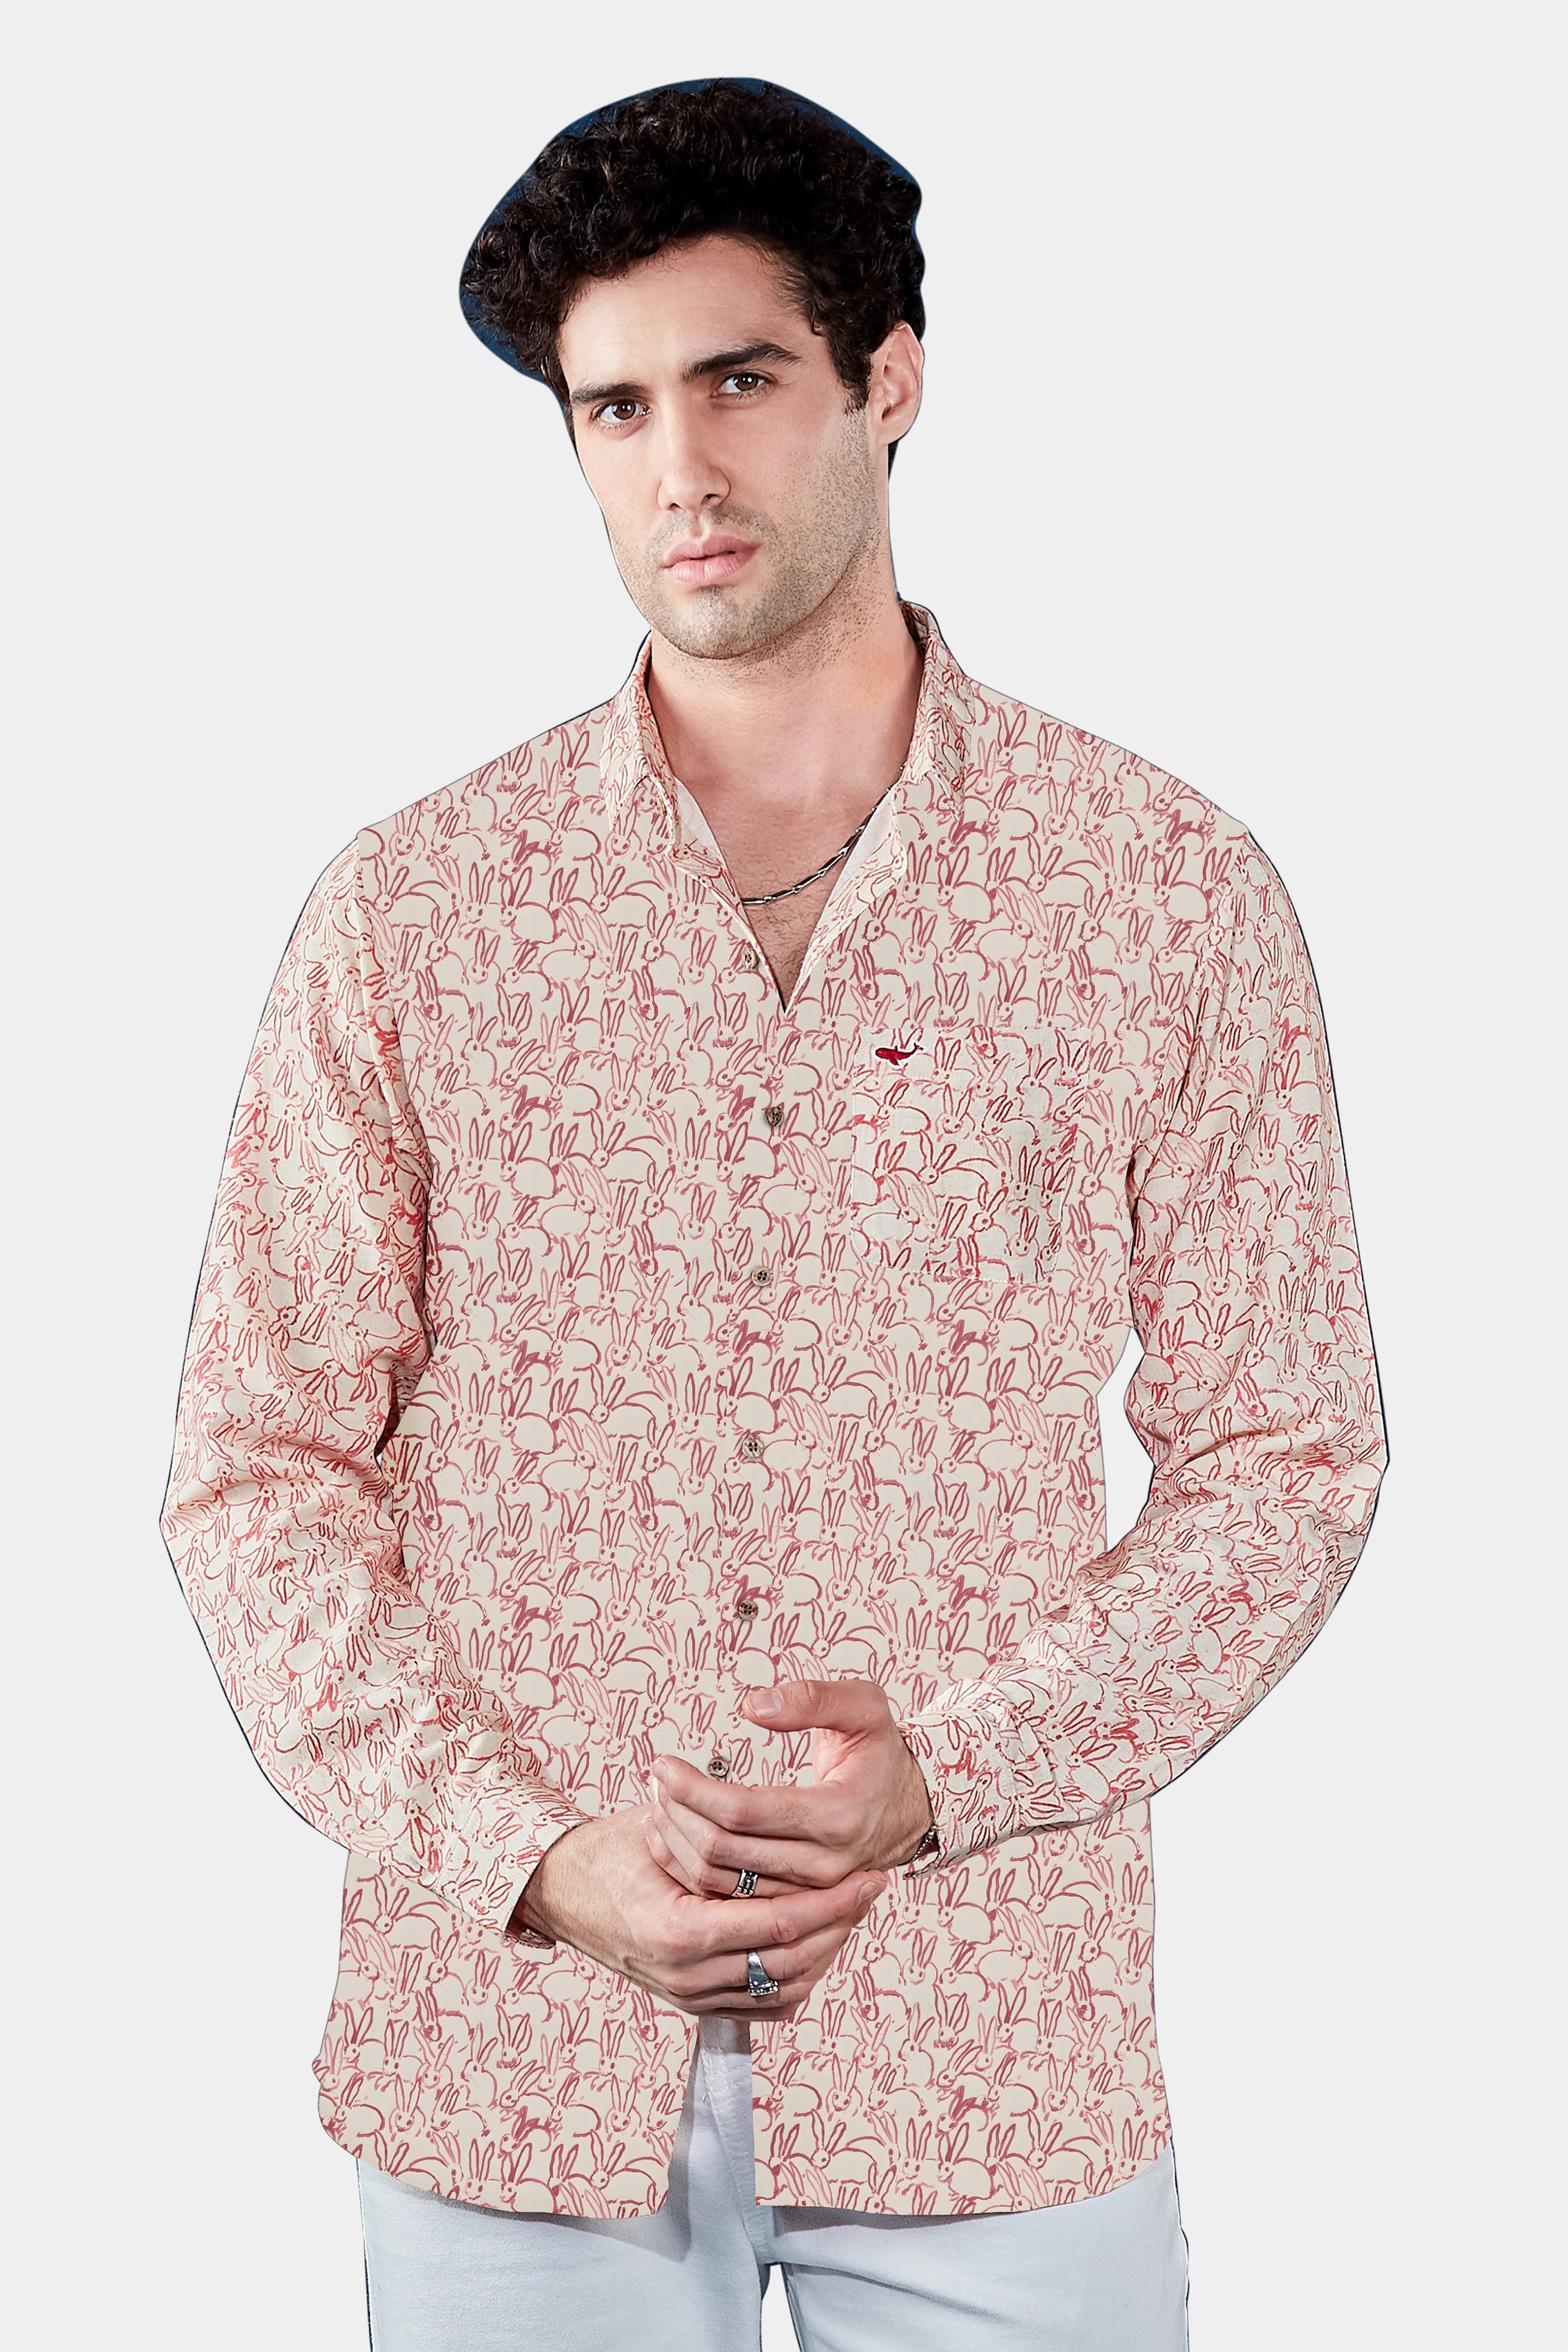 Khar-Gosh Linen summer printed shirt